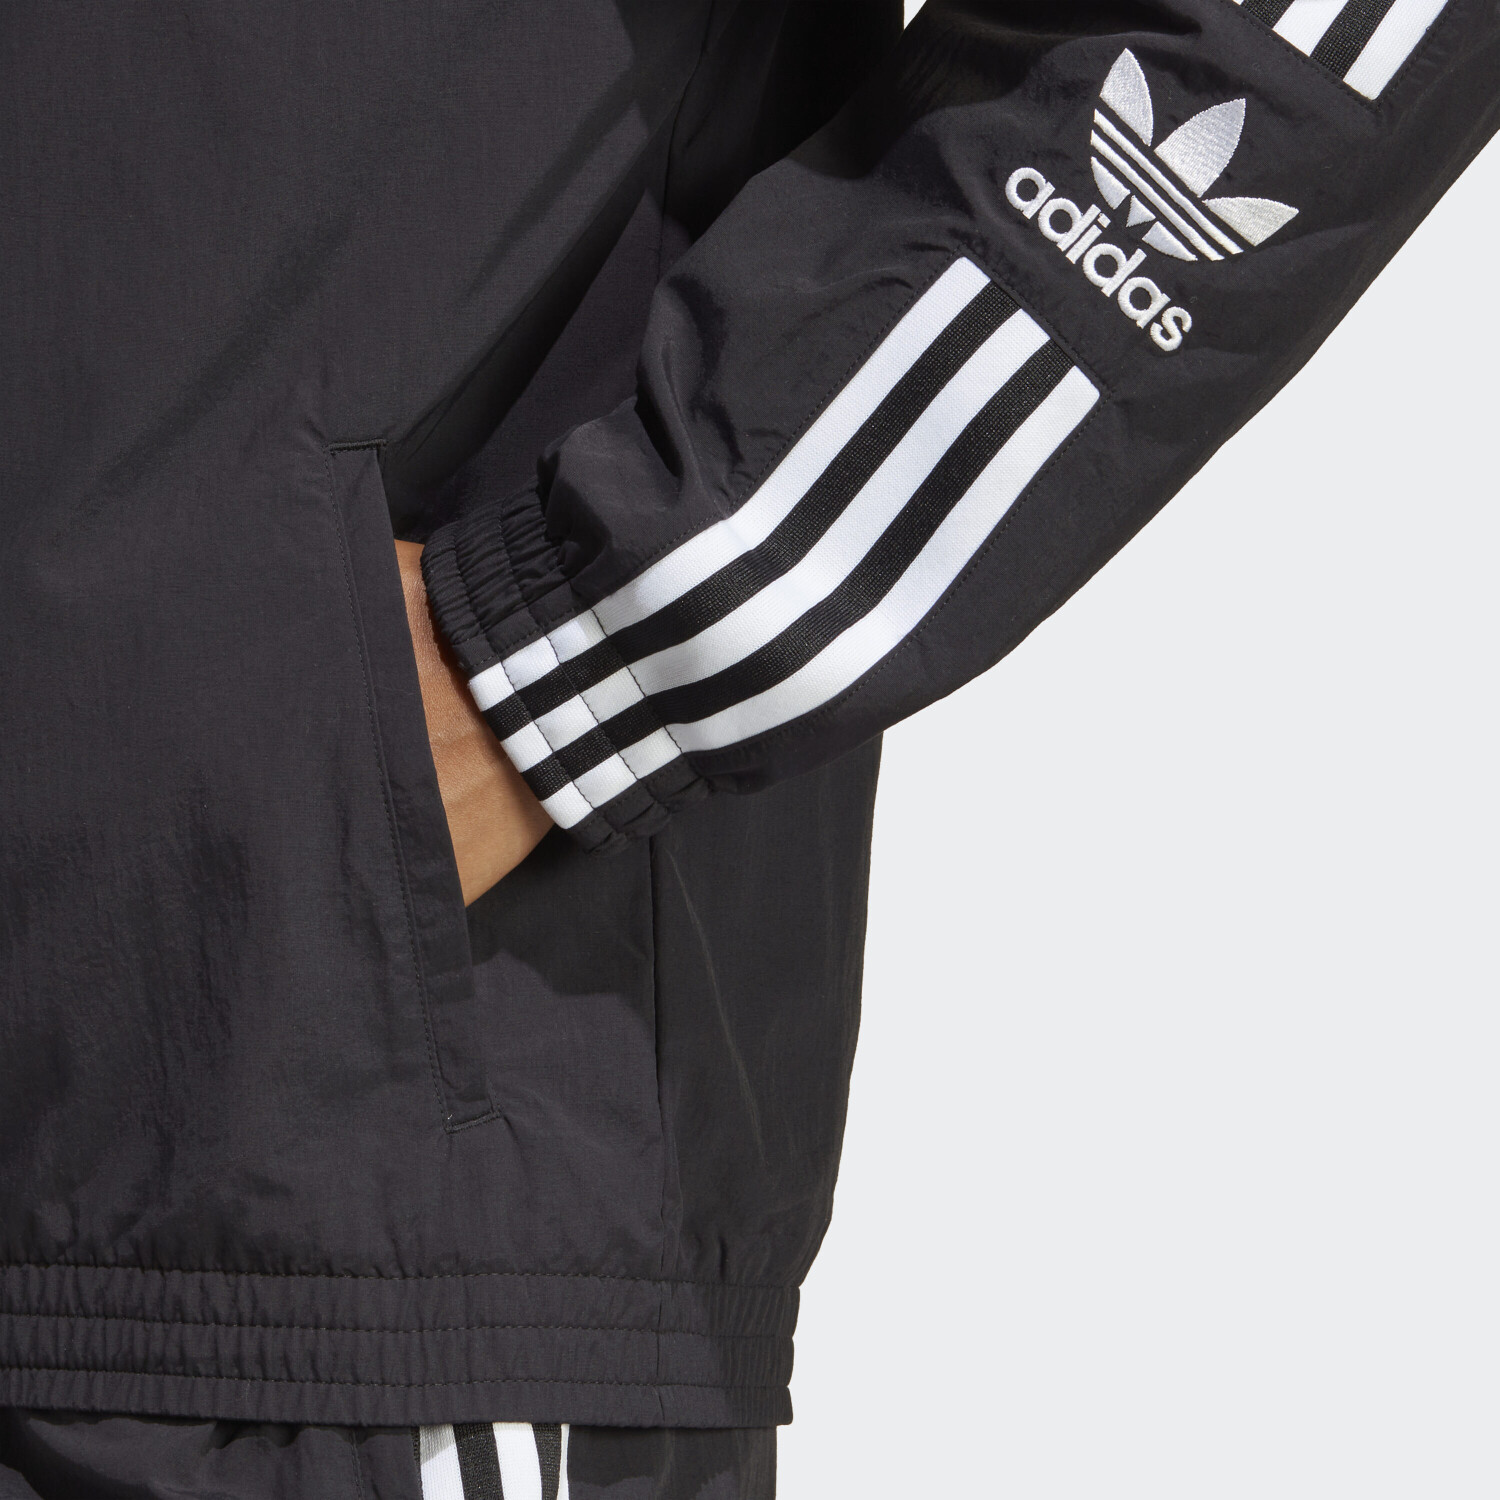 42,39 € Originals Adidas Preisvergleich black Jacke Lock-Up ab adicolor | Classics bei